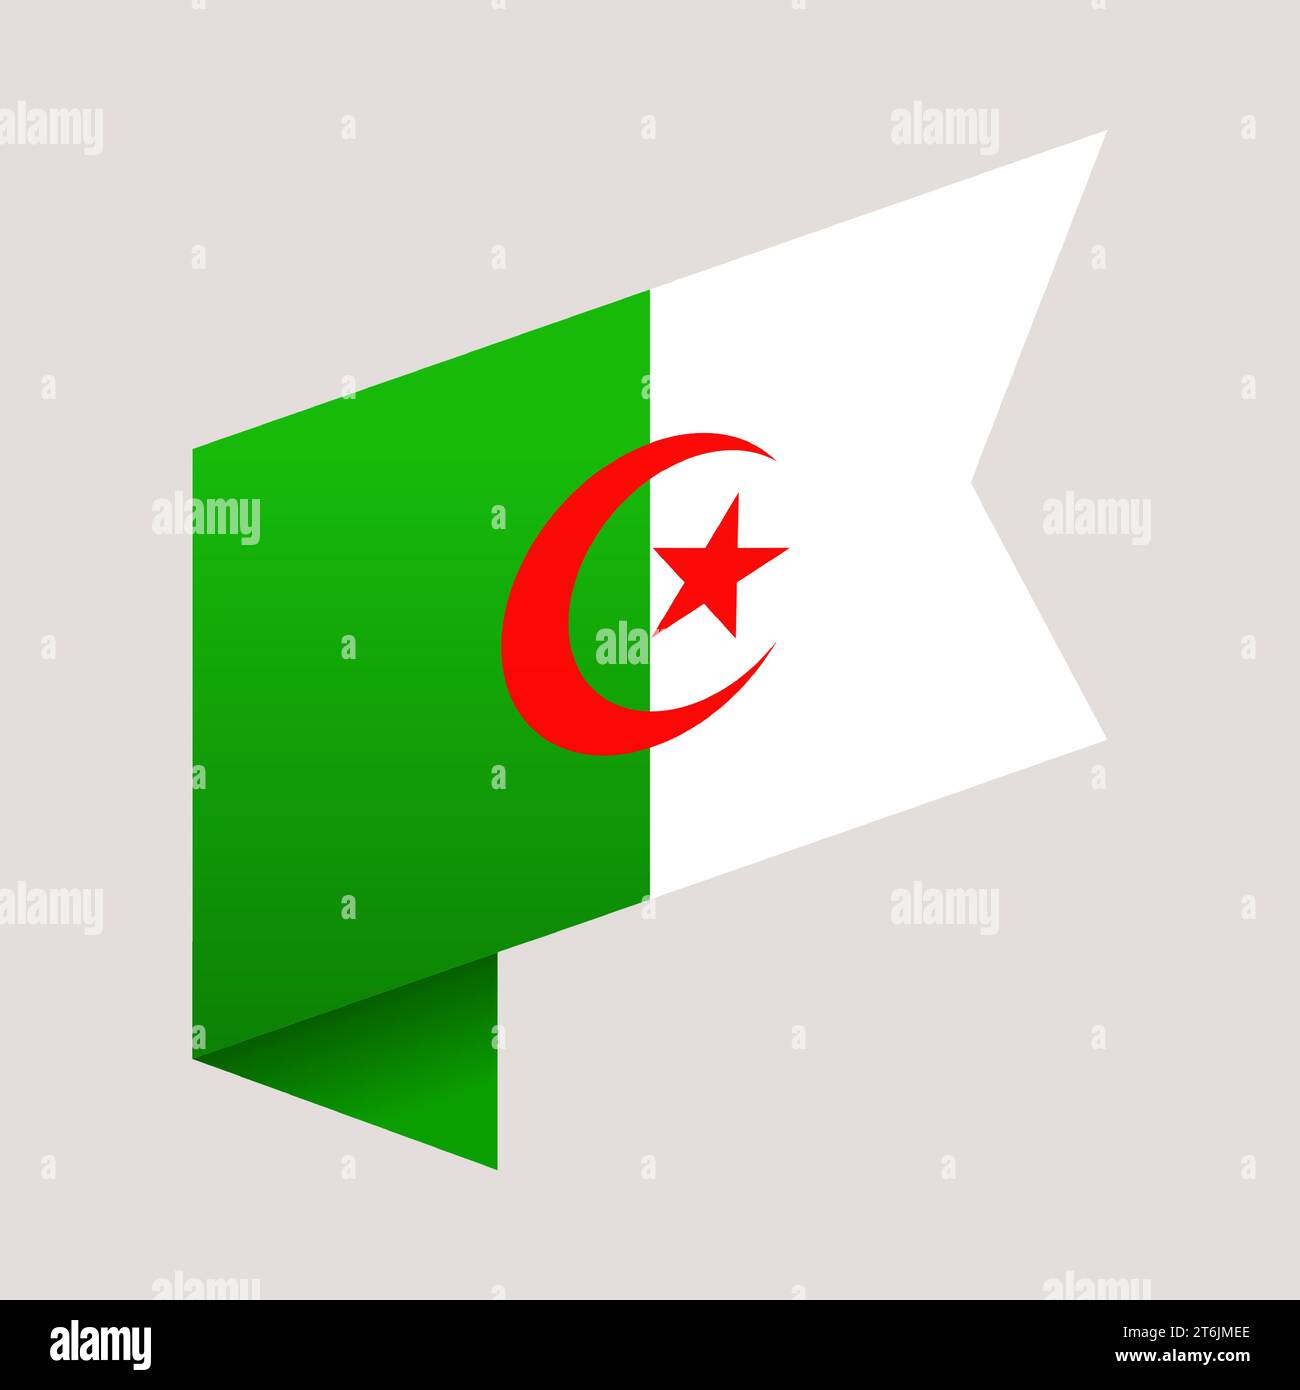 algeria corner flag. vector illustration national flag isolated on light background. Stock Vector